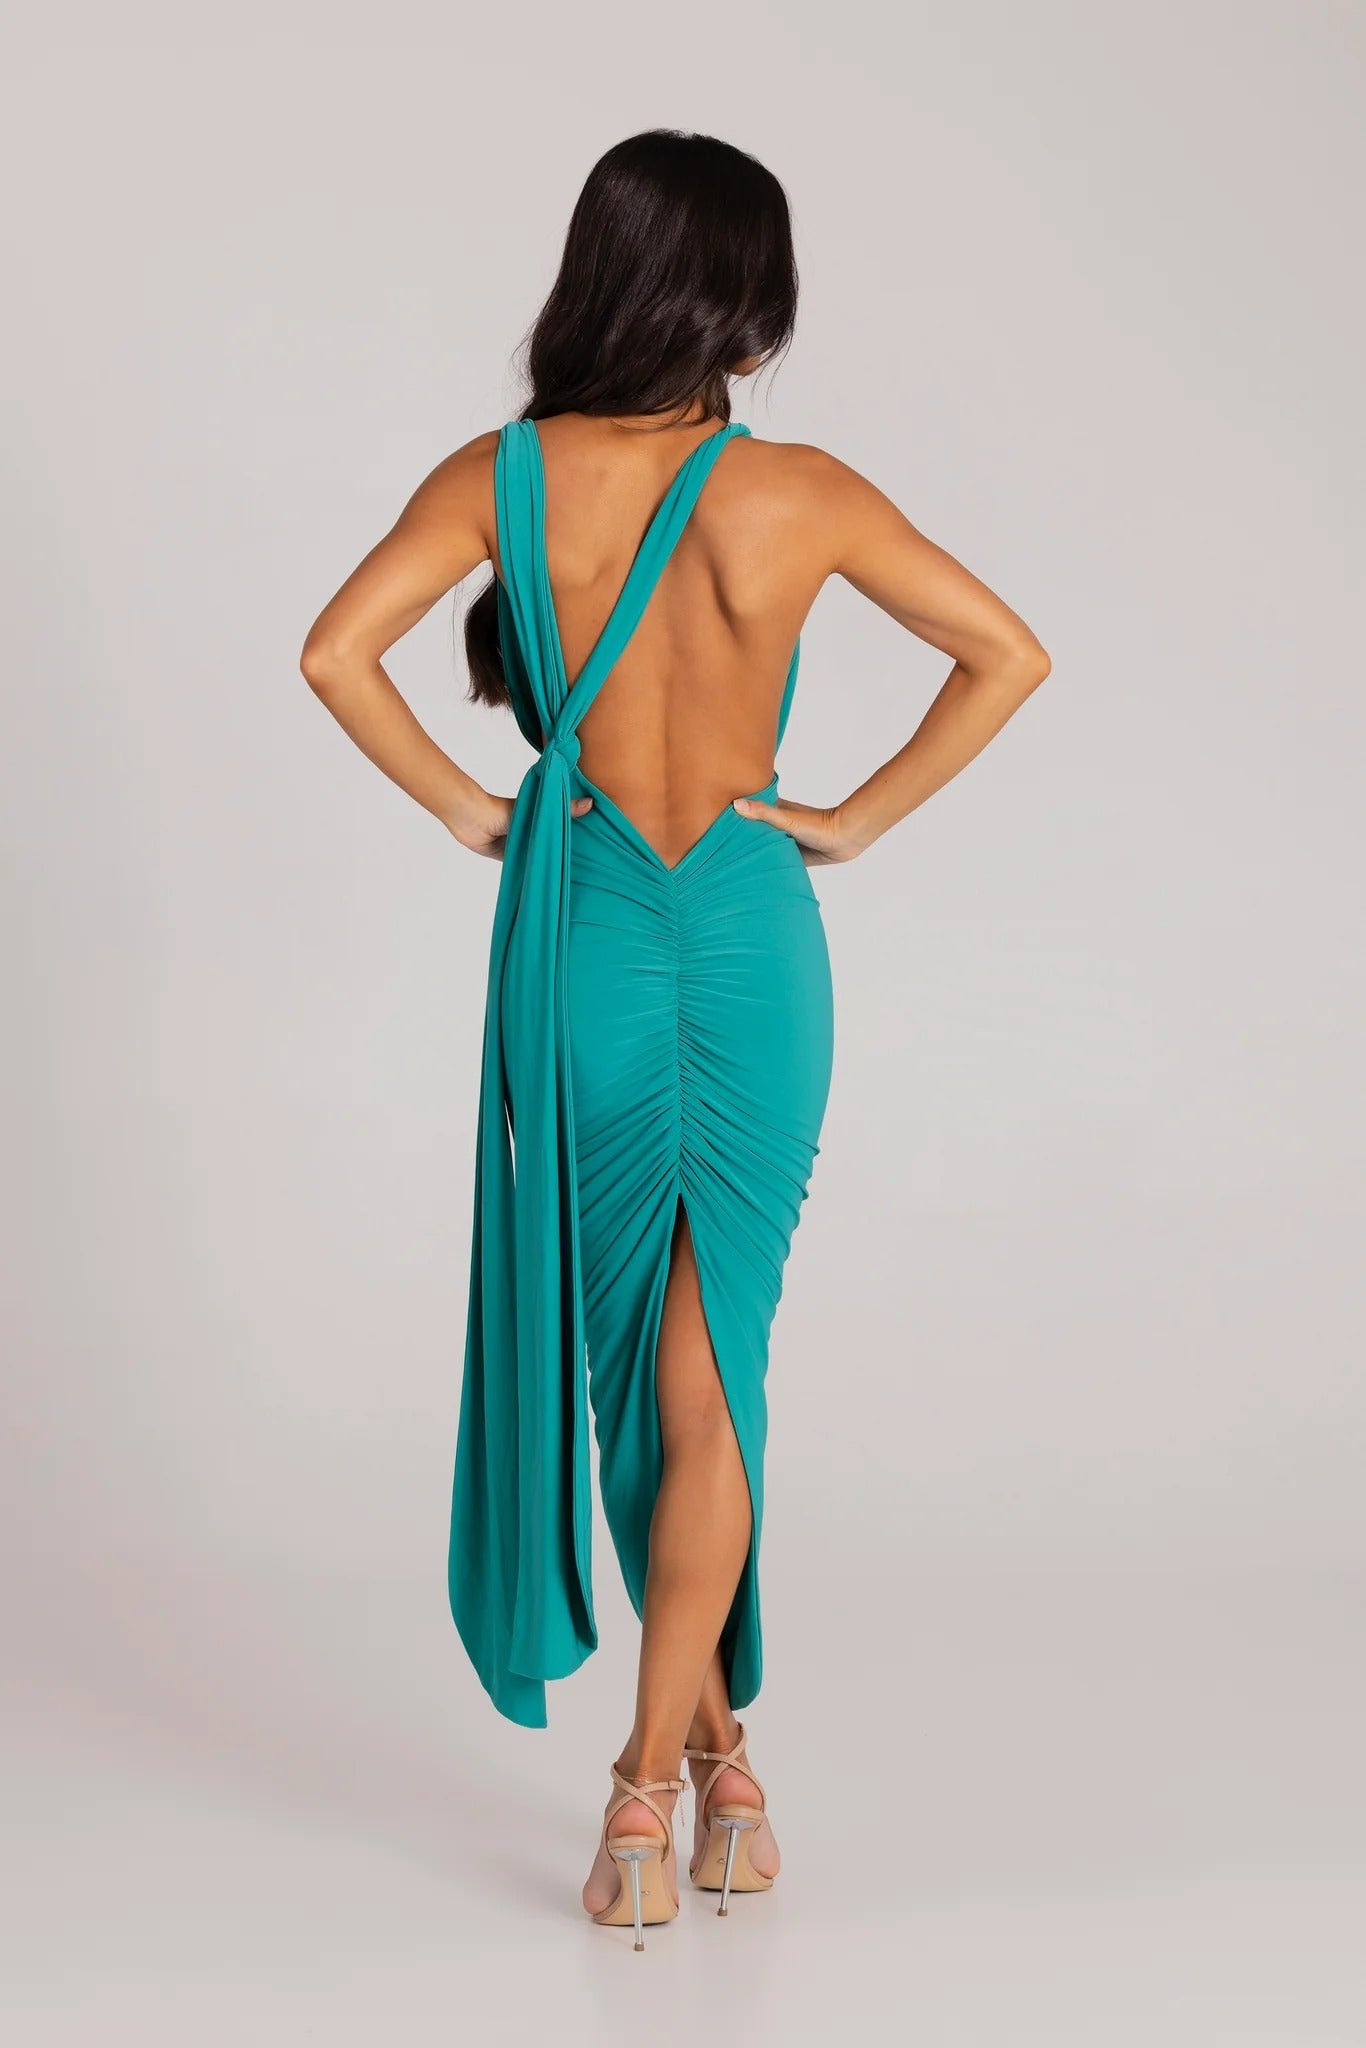 Melrose Multi-Way Dress - Jade - SHOPJAUS - JAUS